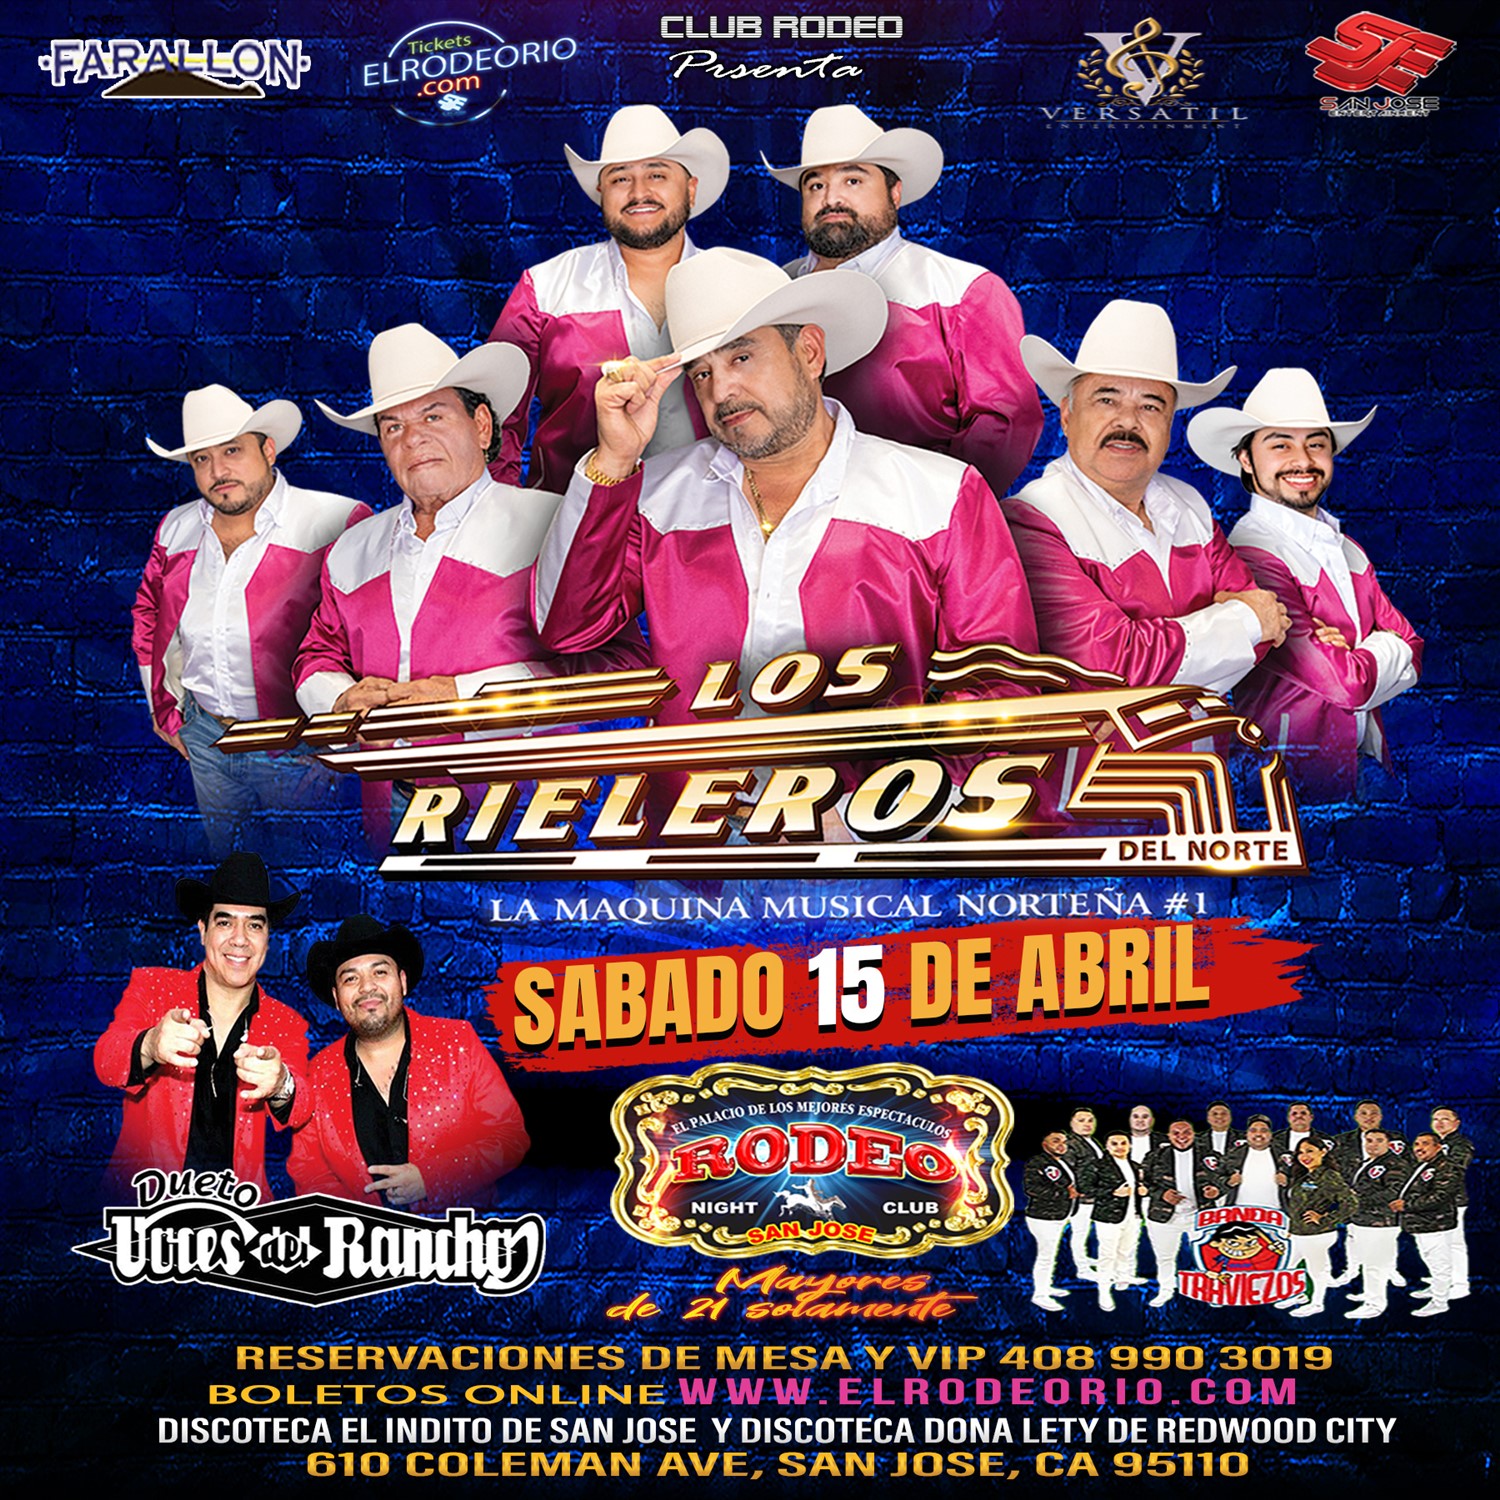 Los Rieleros del Norte y Las Voces del Rancho  on Apr 15, 21:00@Club Rodeo - Buy tickets and Get information on elrodeorio.com sanjoseentertainment